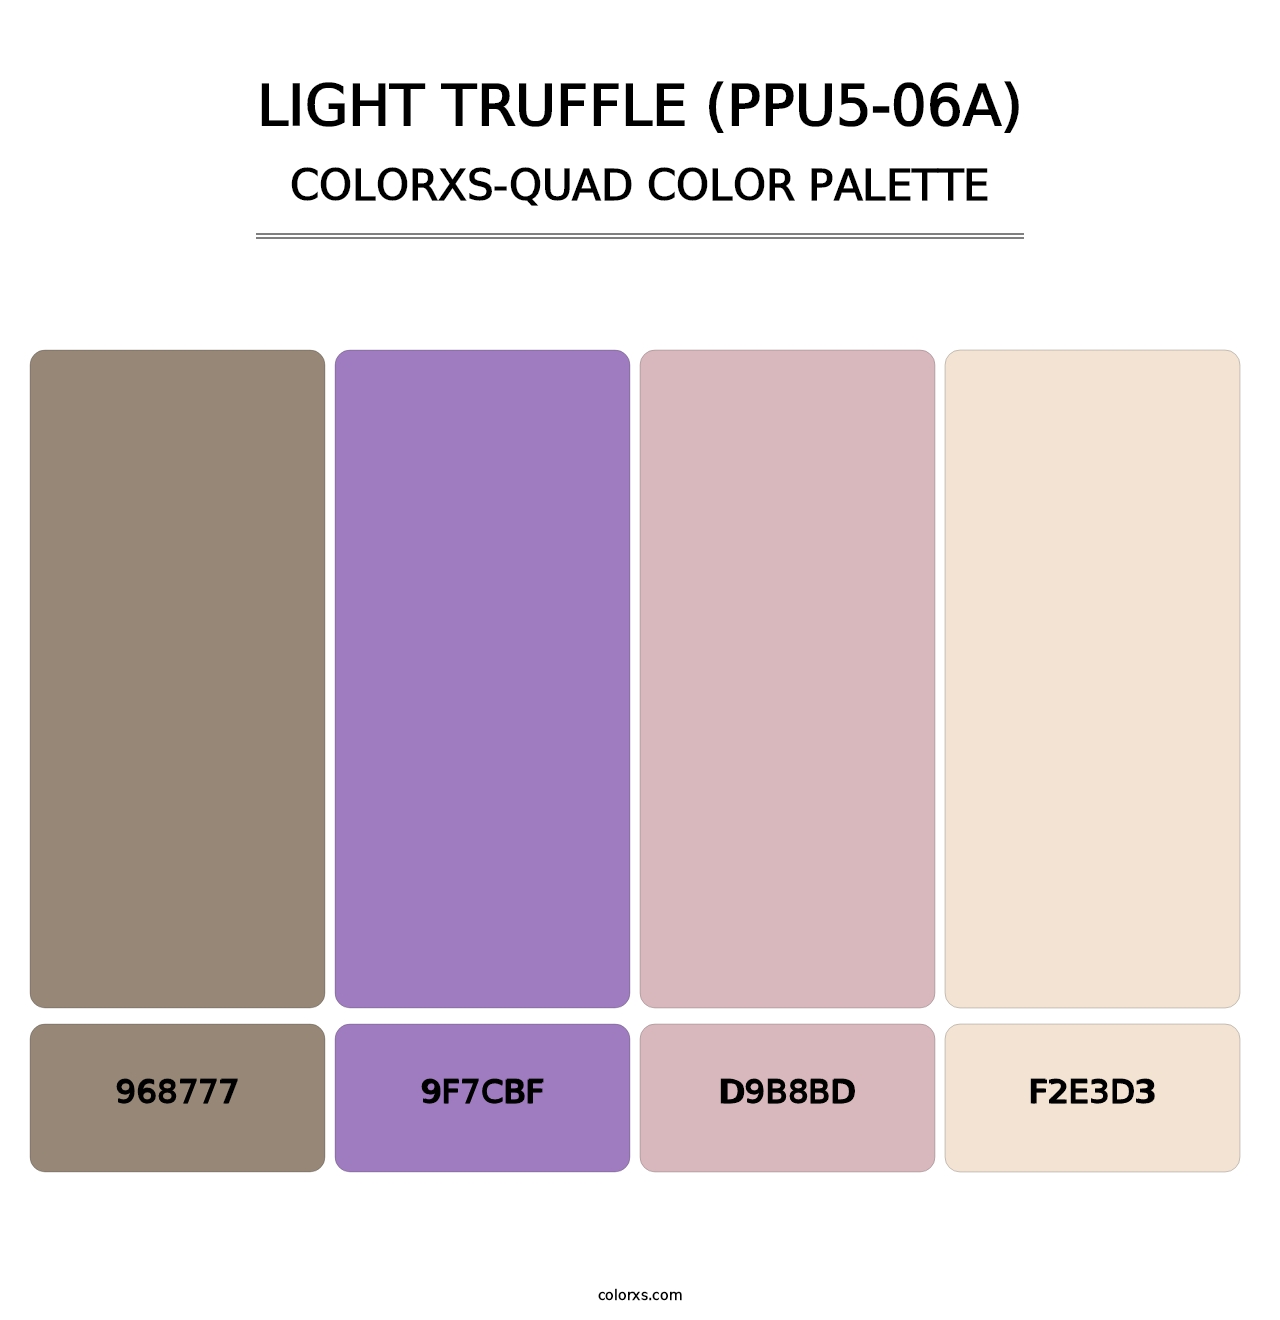 Light Truffle (PPU5-06A) - Colorxs Quad Palette